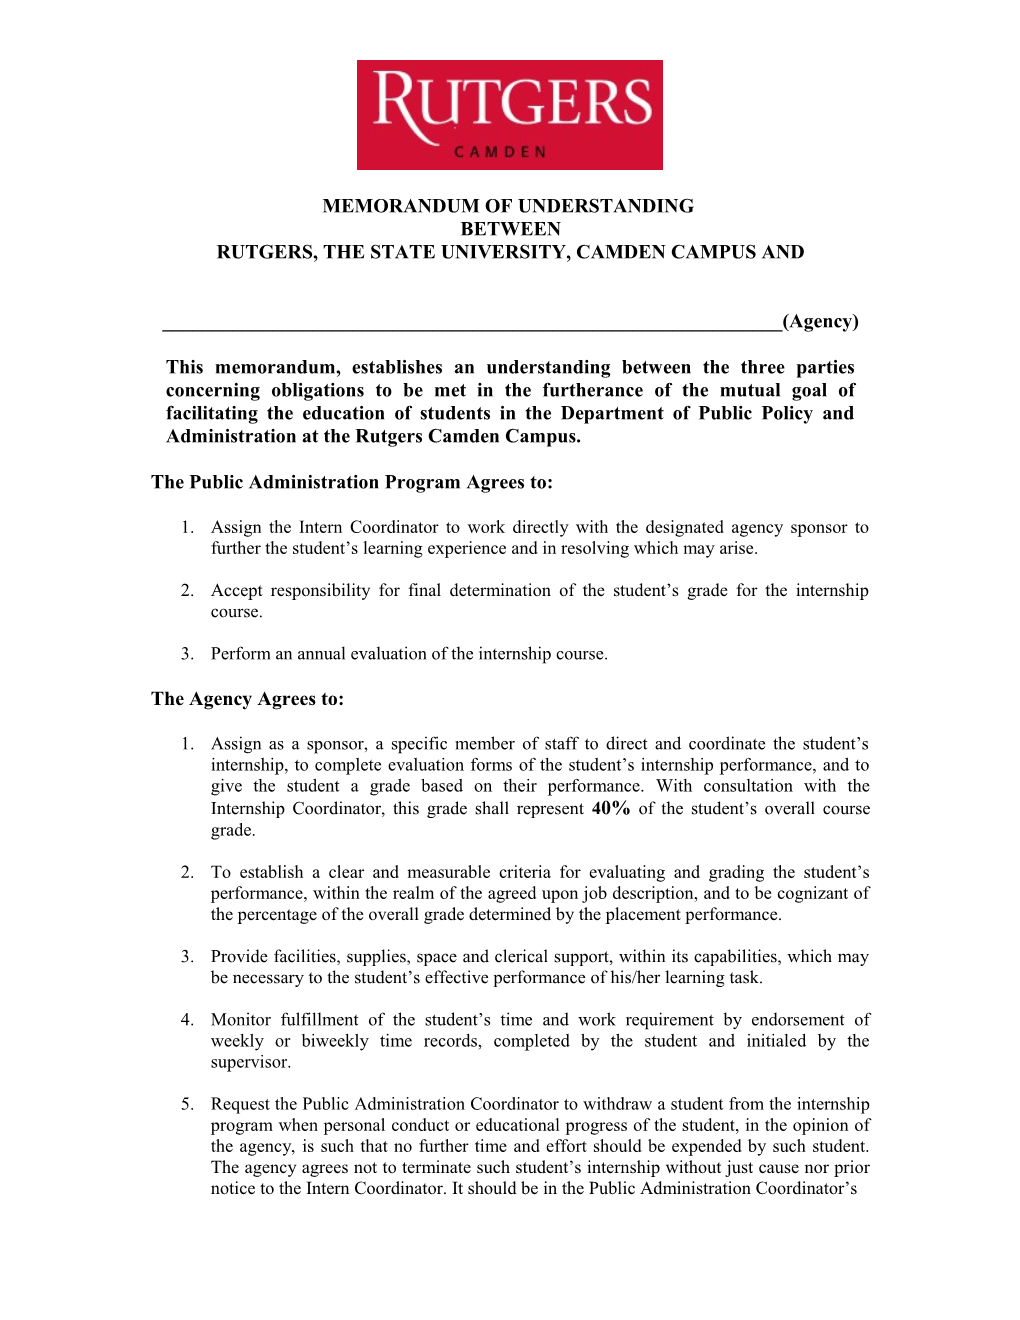 Memorandum of Understanding Agreement